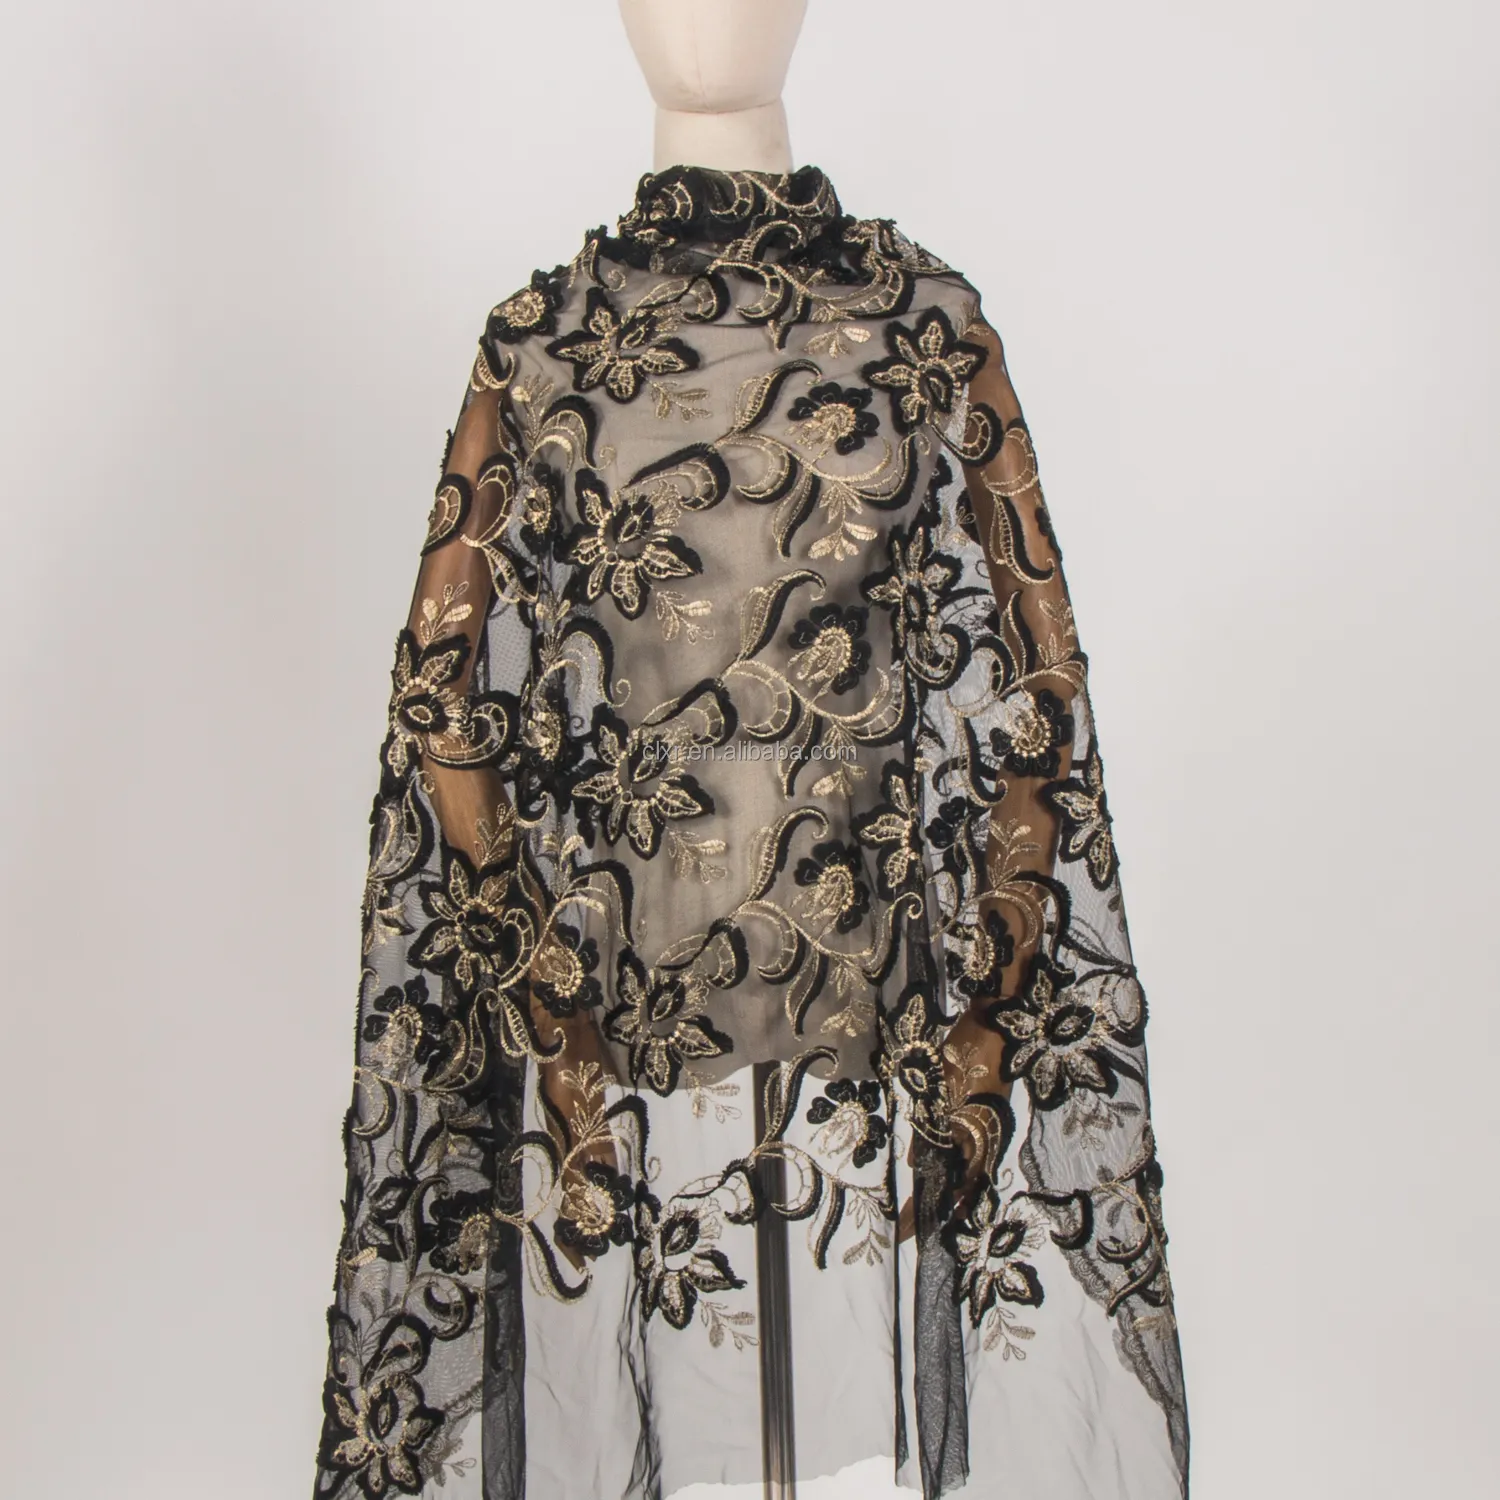 ウェディングドレス用刺繍グリッター付き卸売ツートンカラーポリエステルチュールレース生地ファンシー